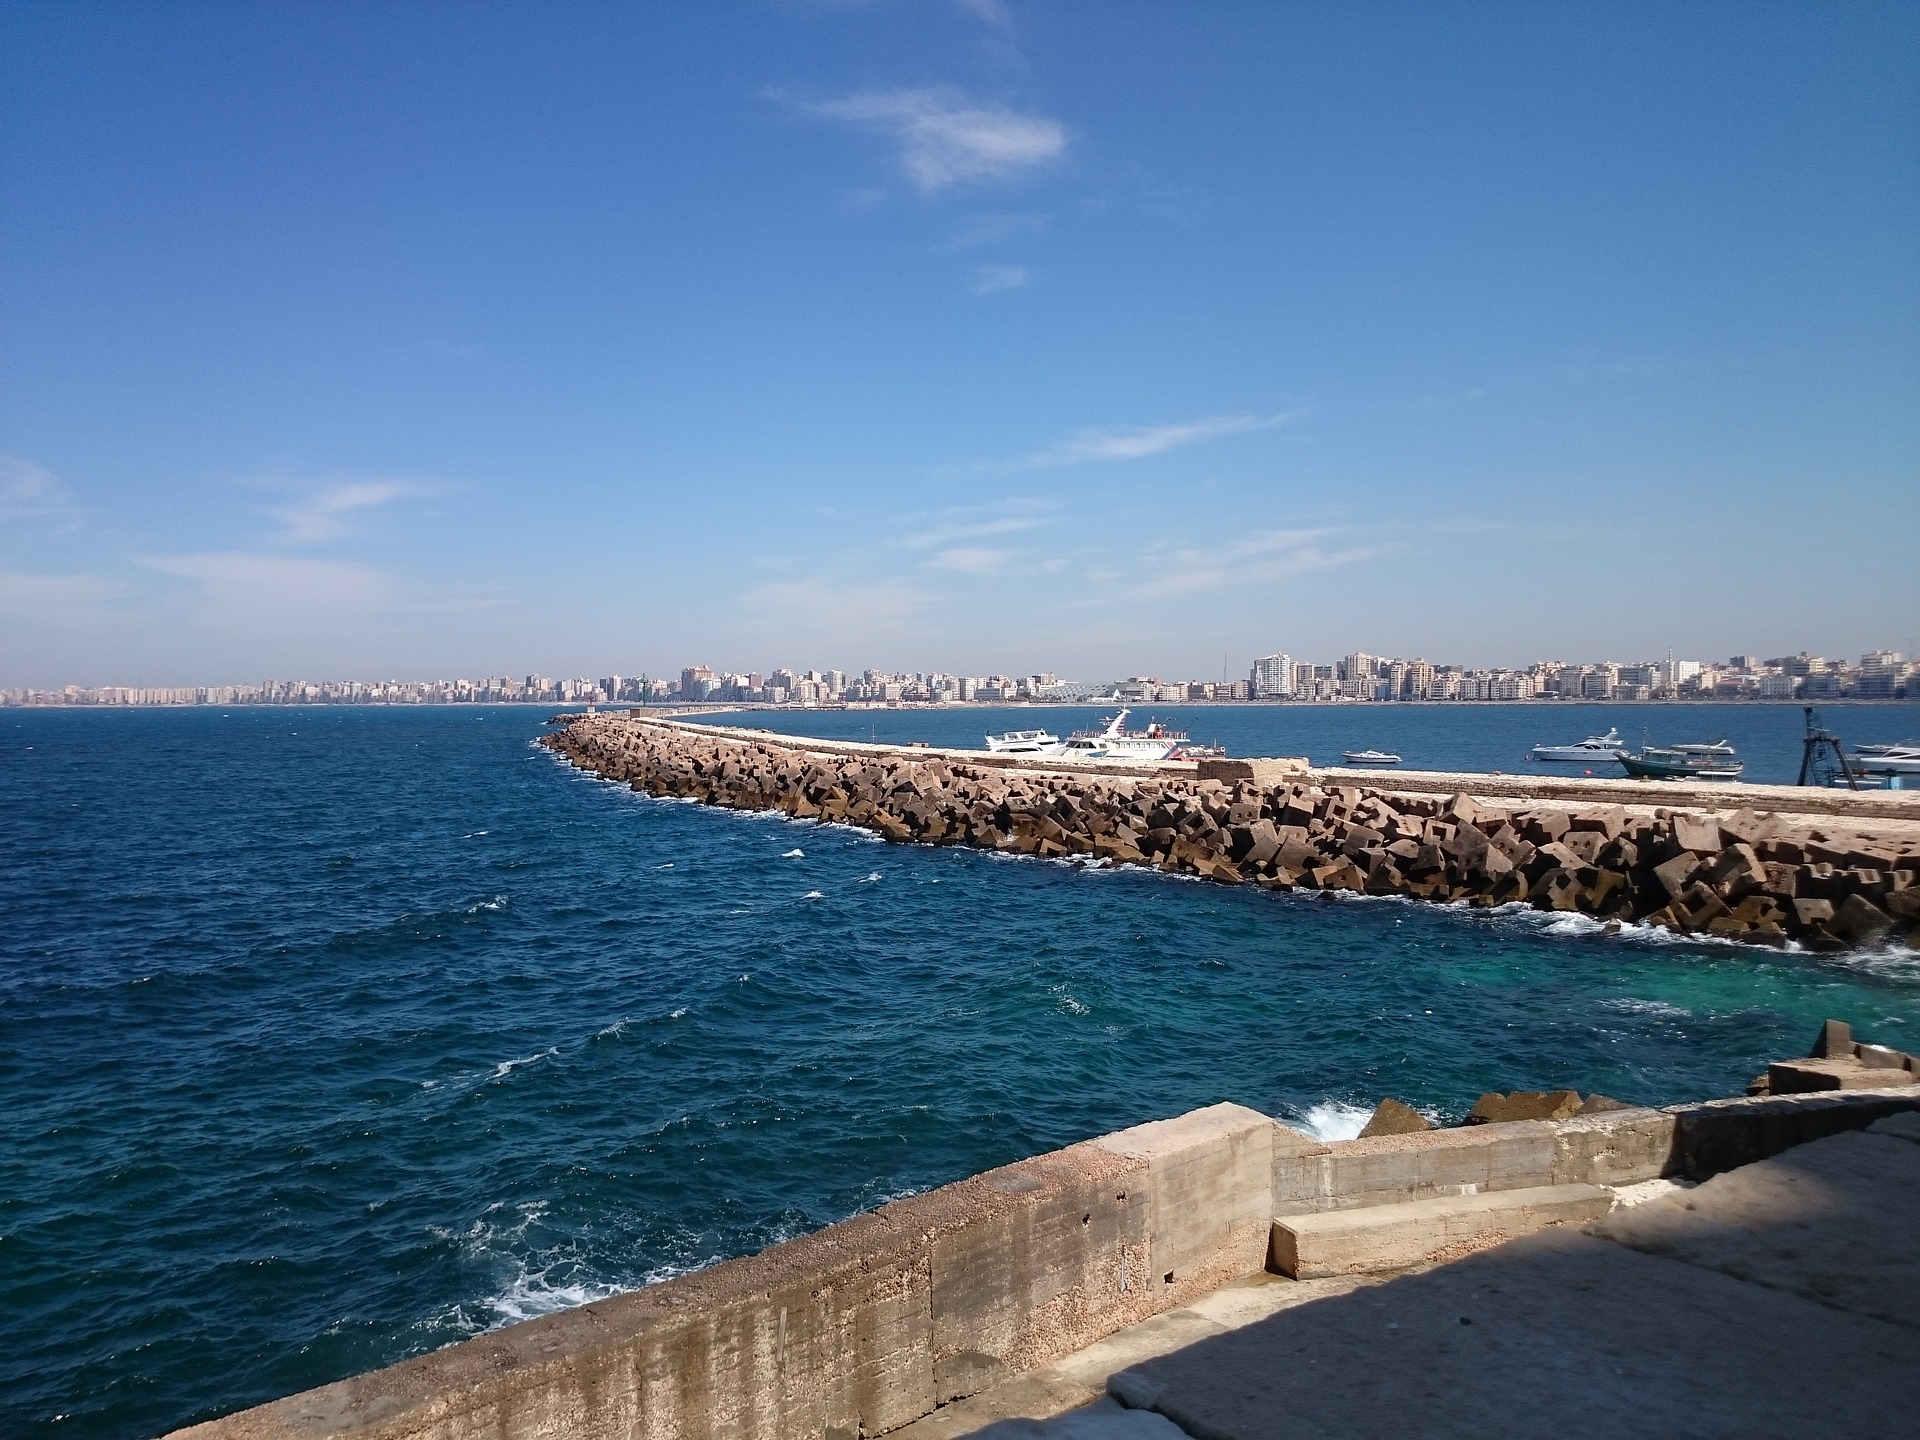 Harbor in Alexandria, Egypt